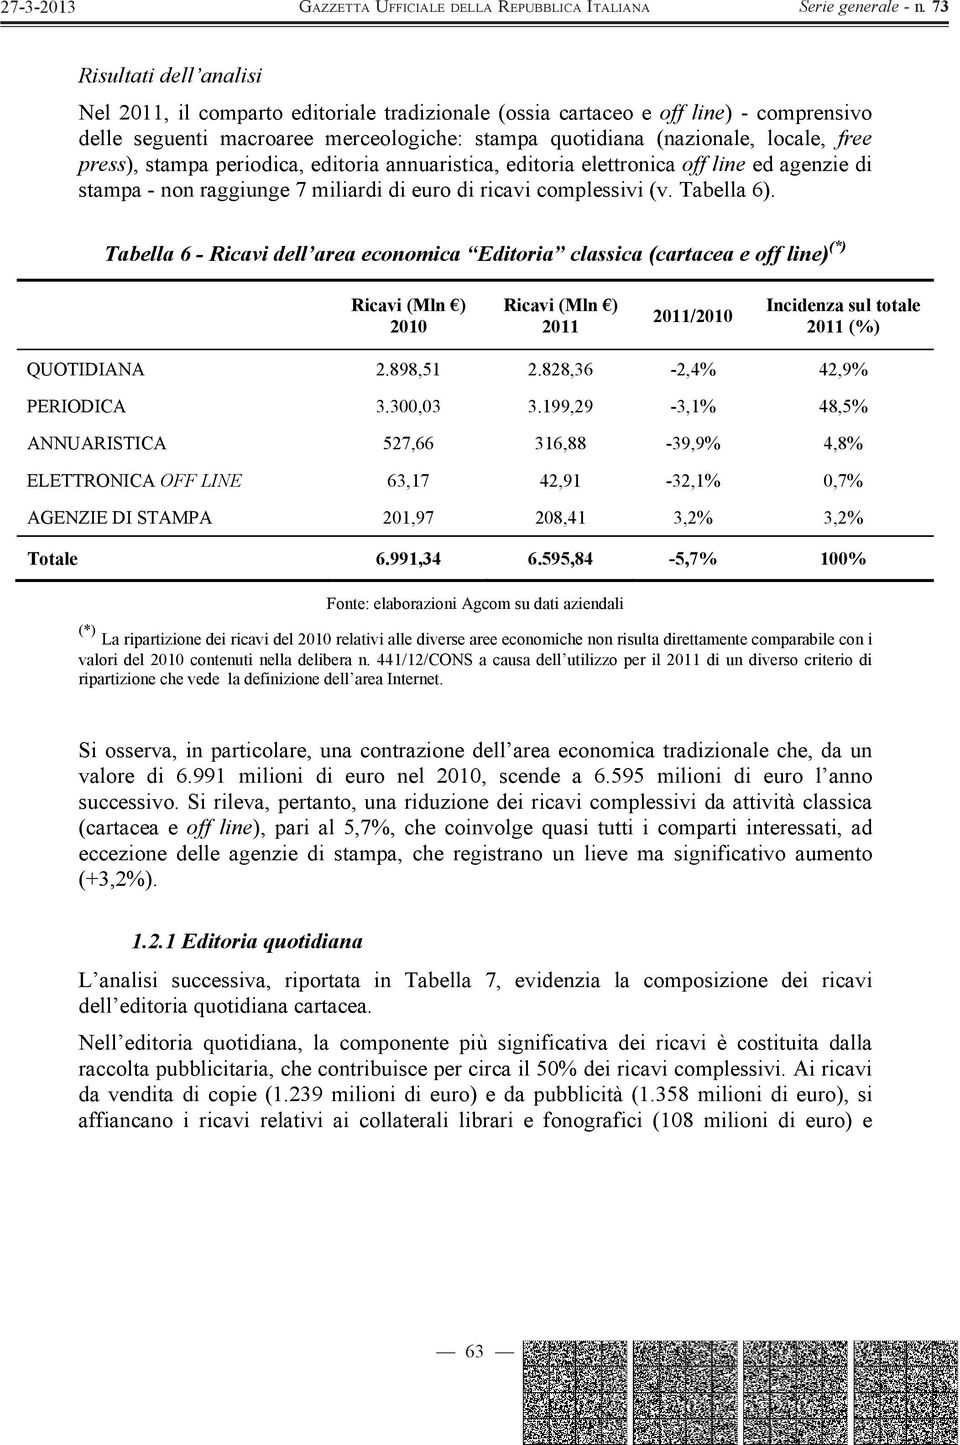 Tabella 6 - Ricavi dell area economica Editoria classica (cartacea e off line) (*) Ricavi (Mln ) 2010 Ricavi (Mln ) 2011 2011/2010 Incidenza sul totale 2011 (%) QUOTIDIANA 2.898,51 2.